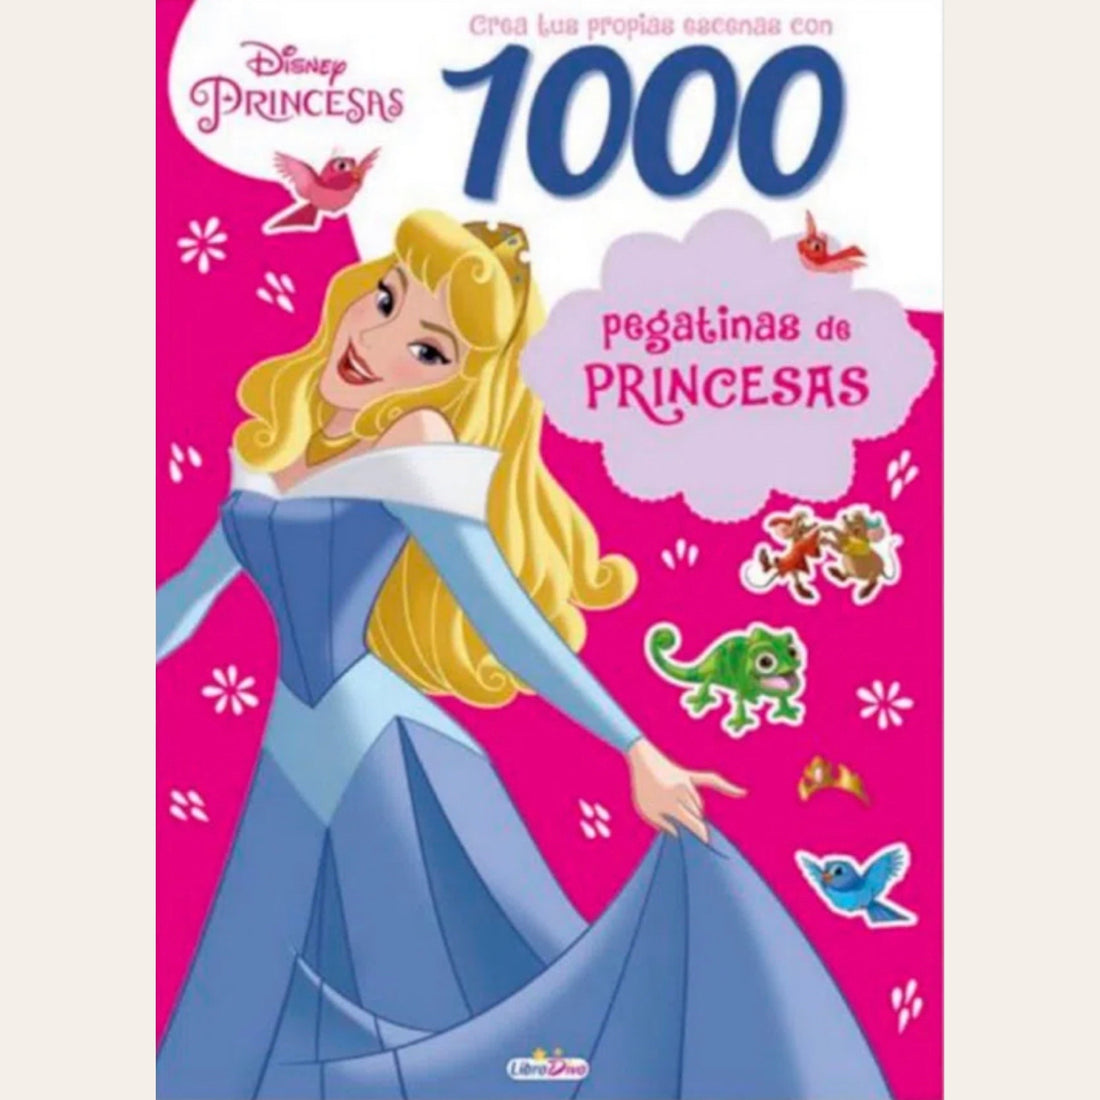 1000 Stickers Princesas Disney